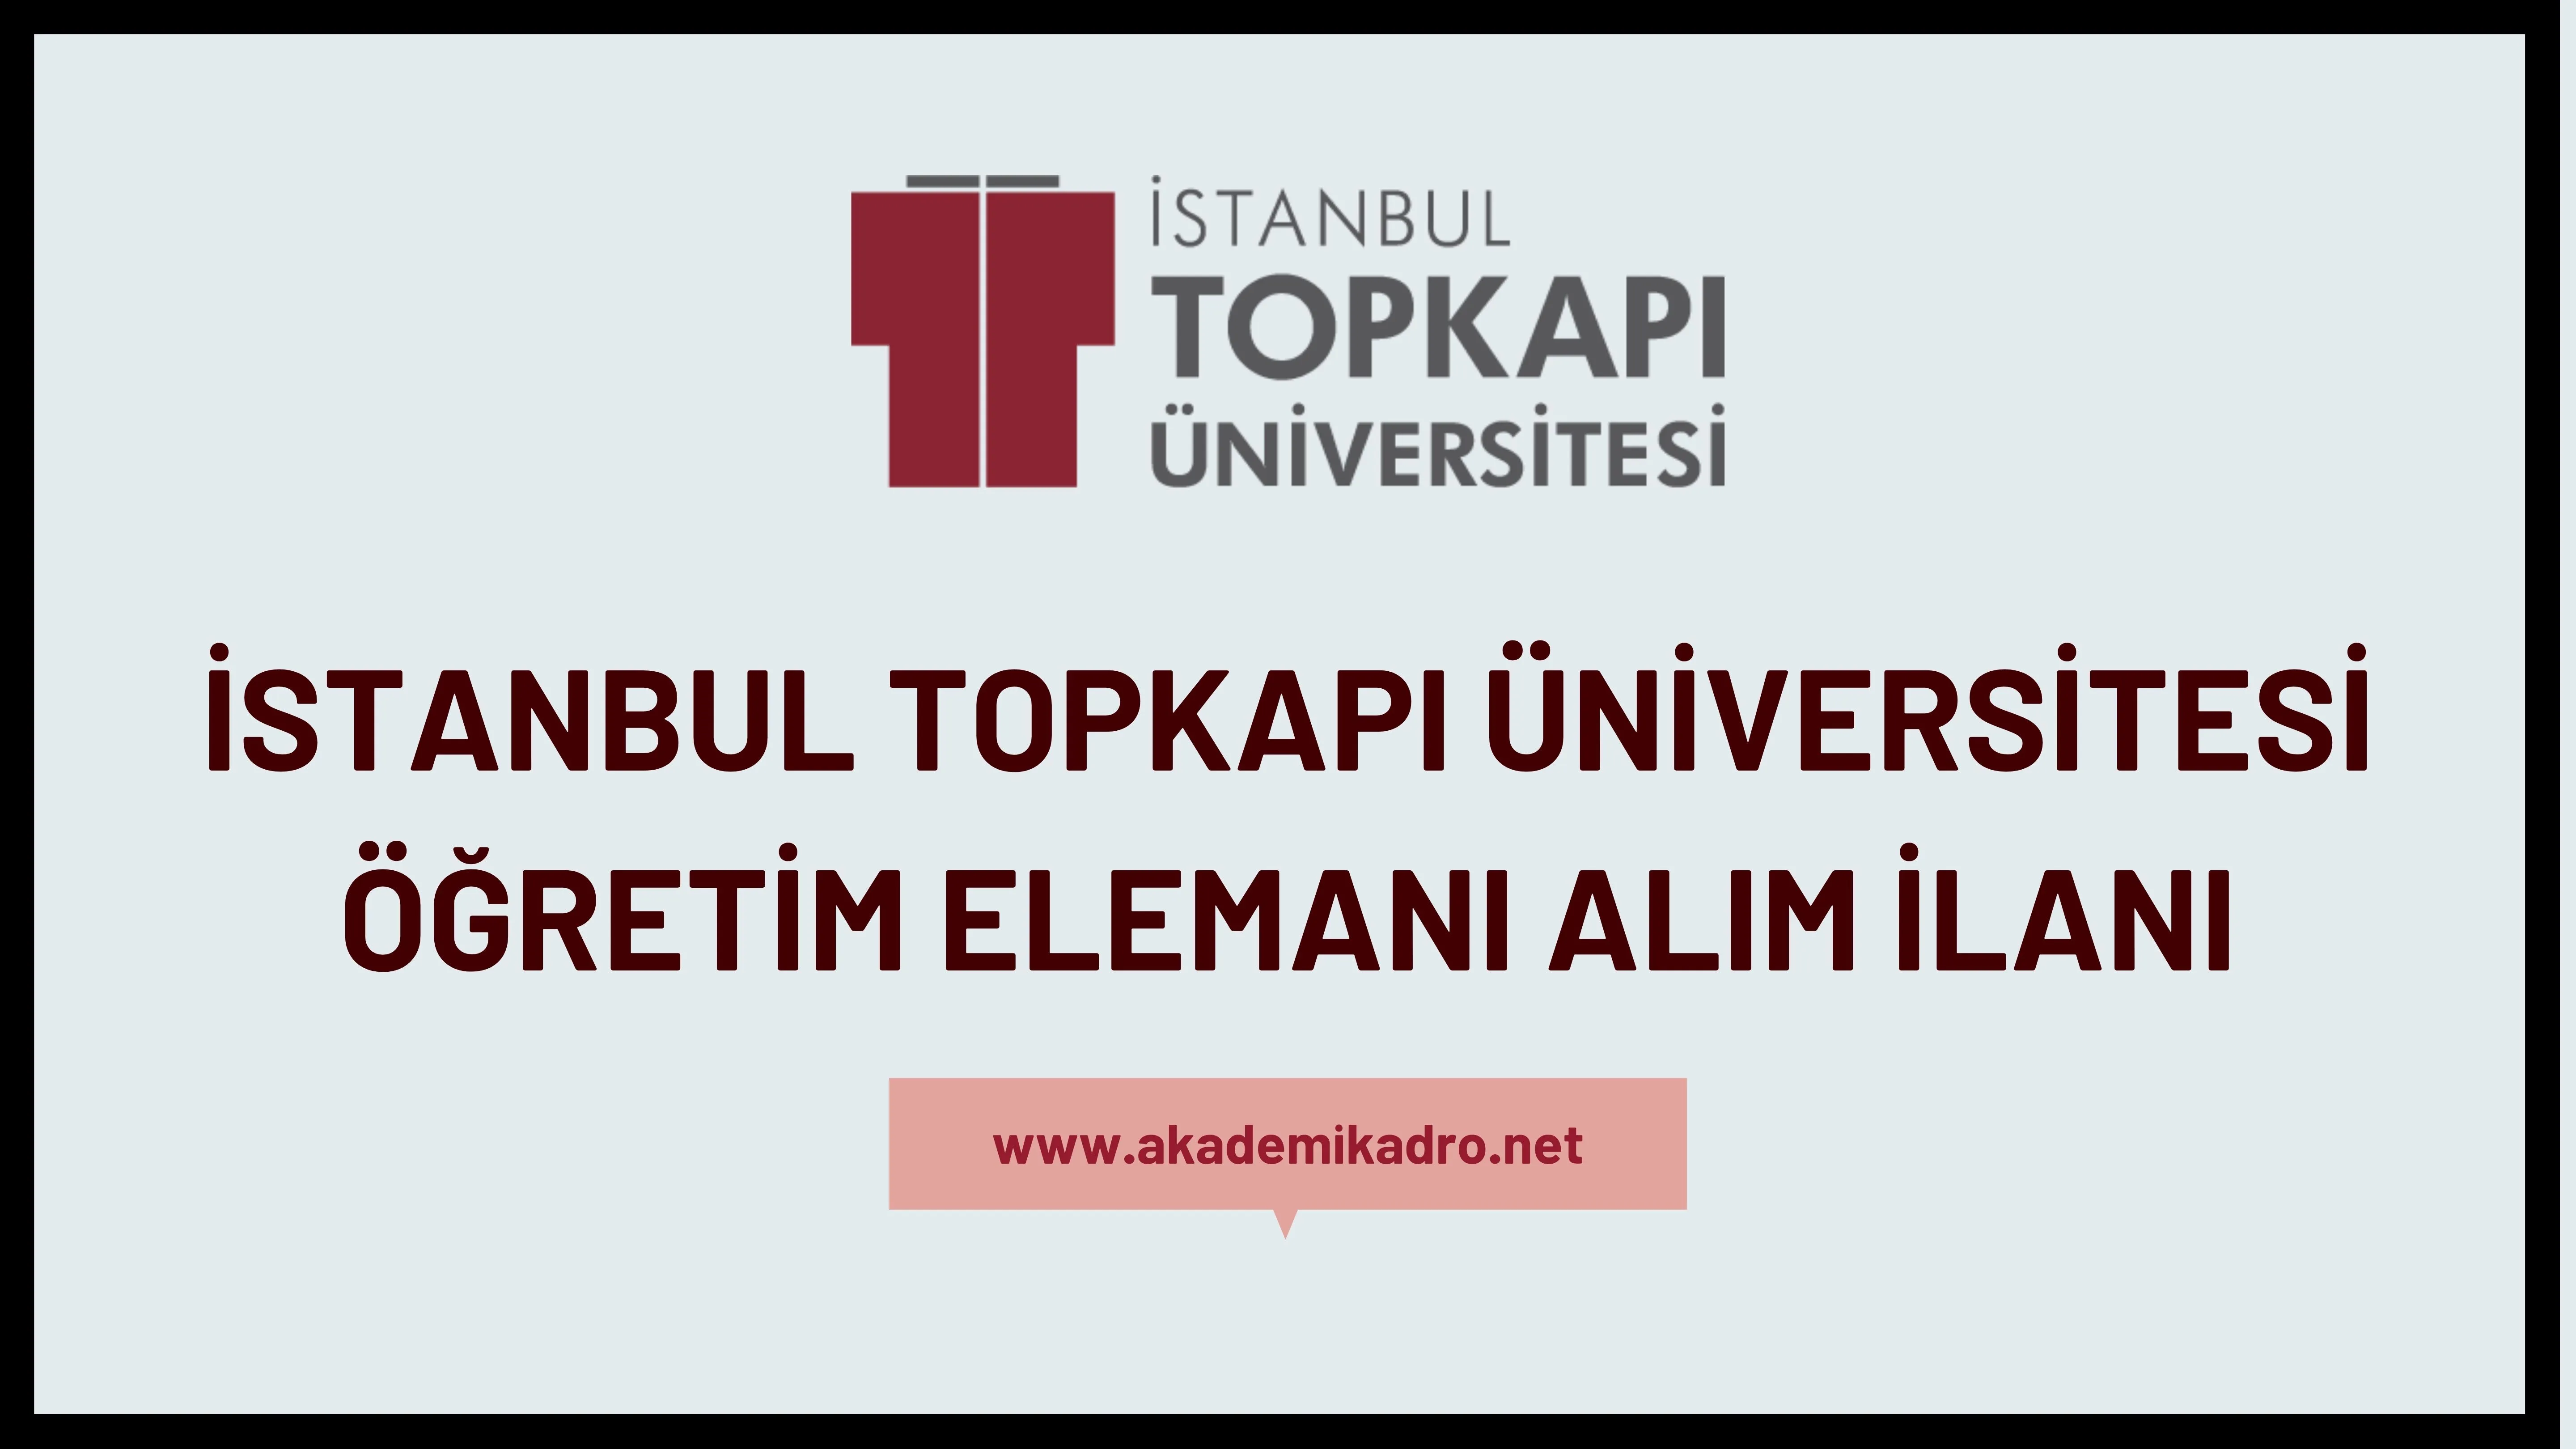 İstanbul Topkapı Üniversitesi 2 Araştırma görevlisi ve 7 Öğretim üyesi alacak.